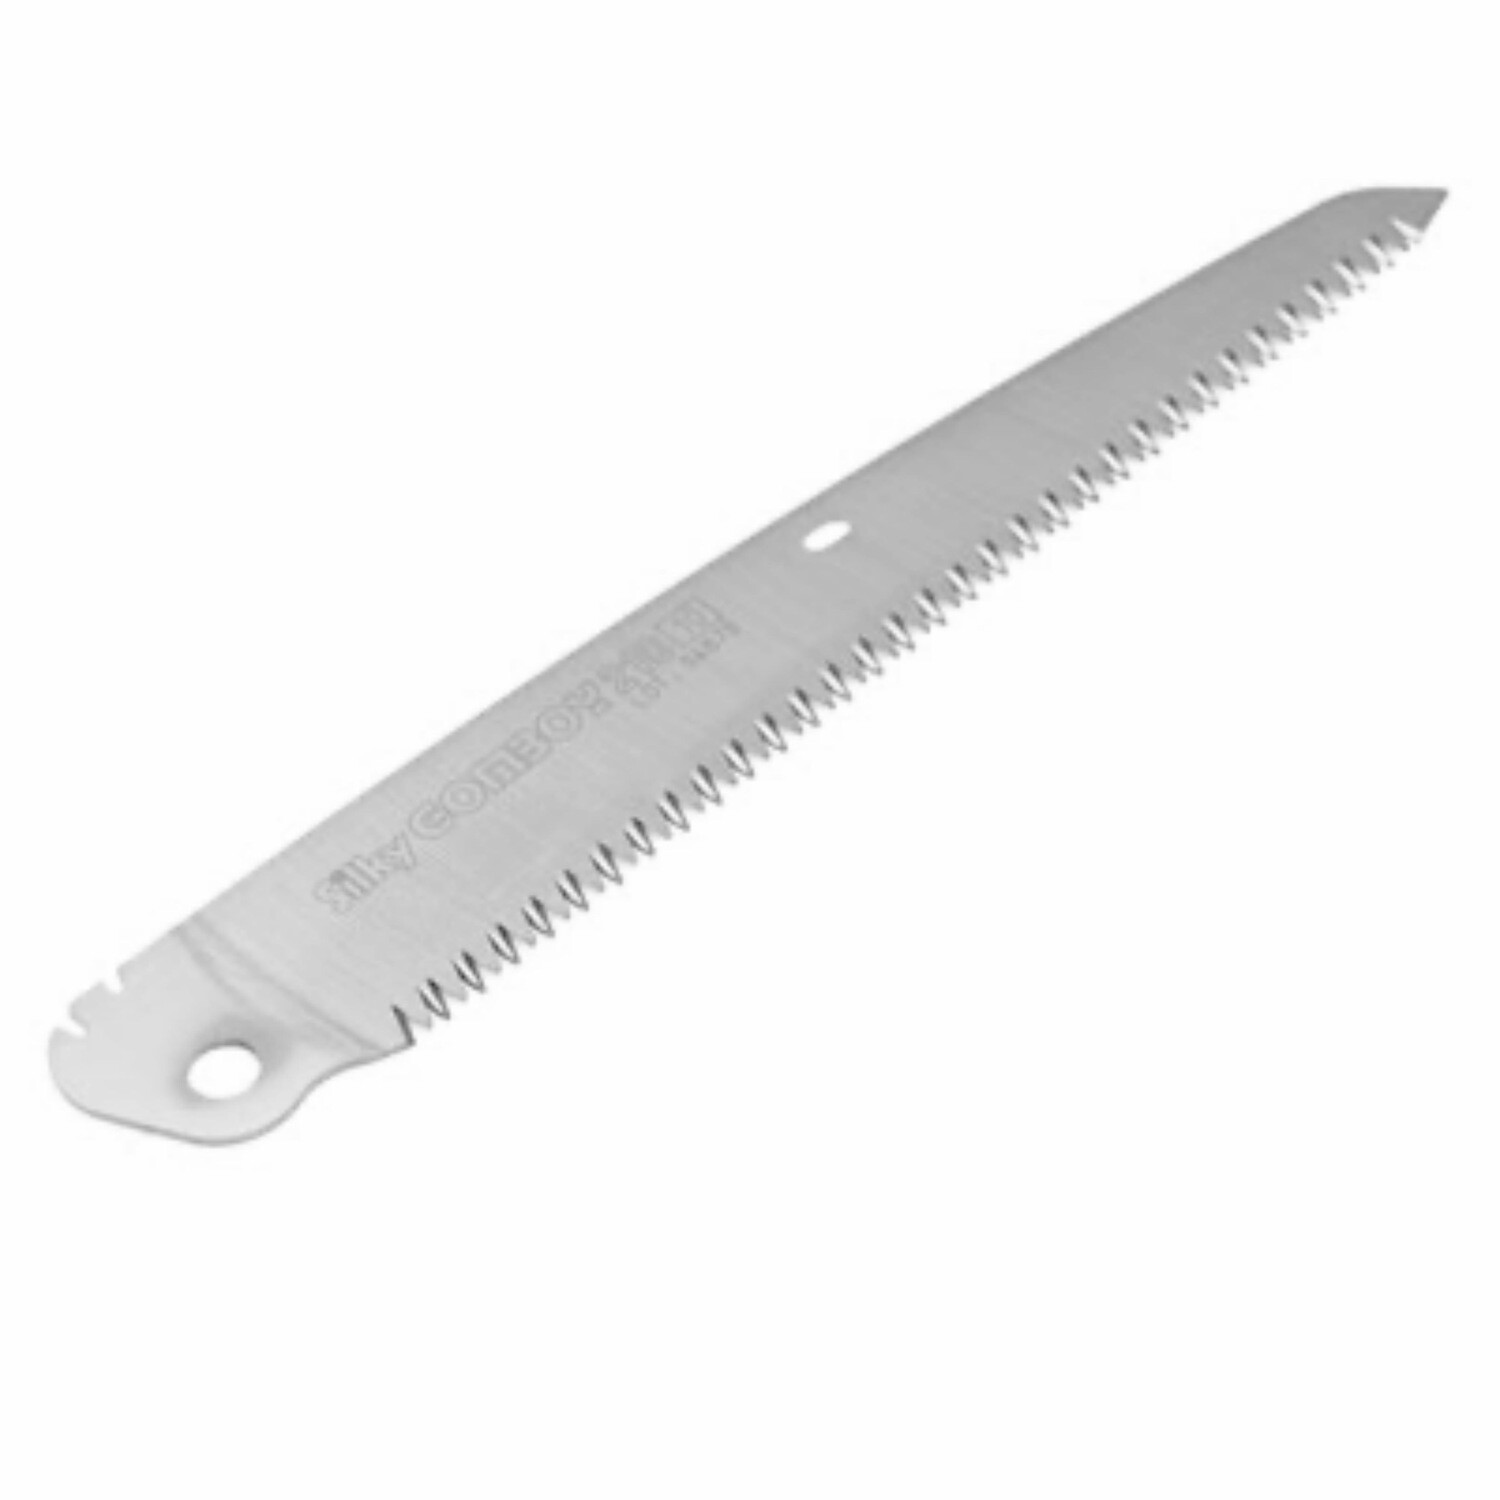 GOMBOY 270 (MED Teeth) Extra blade